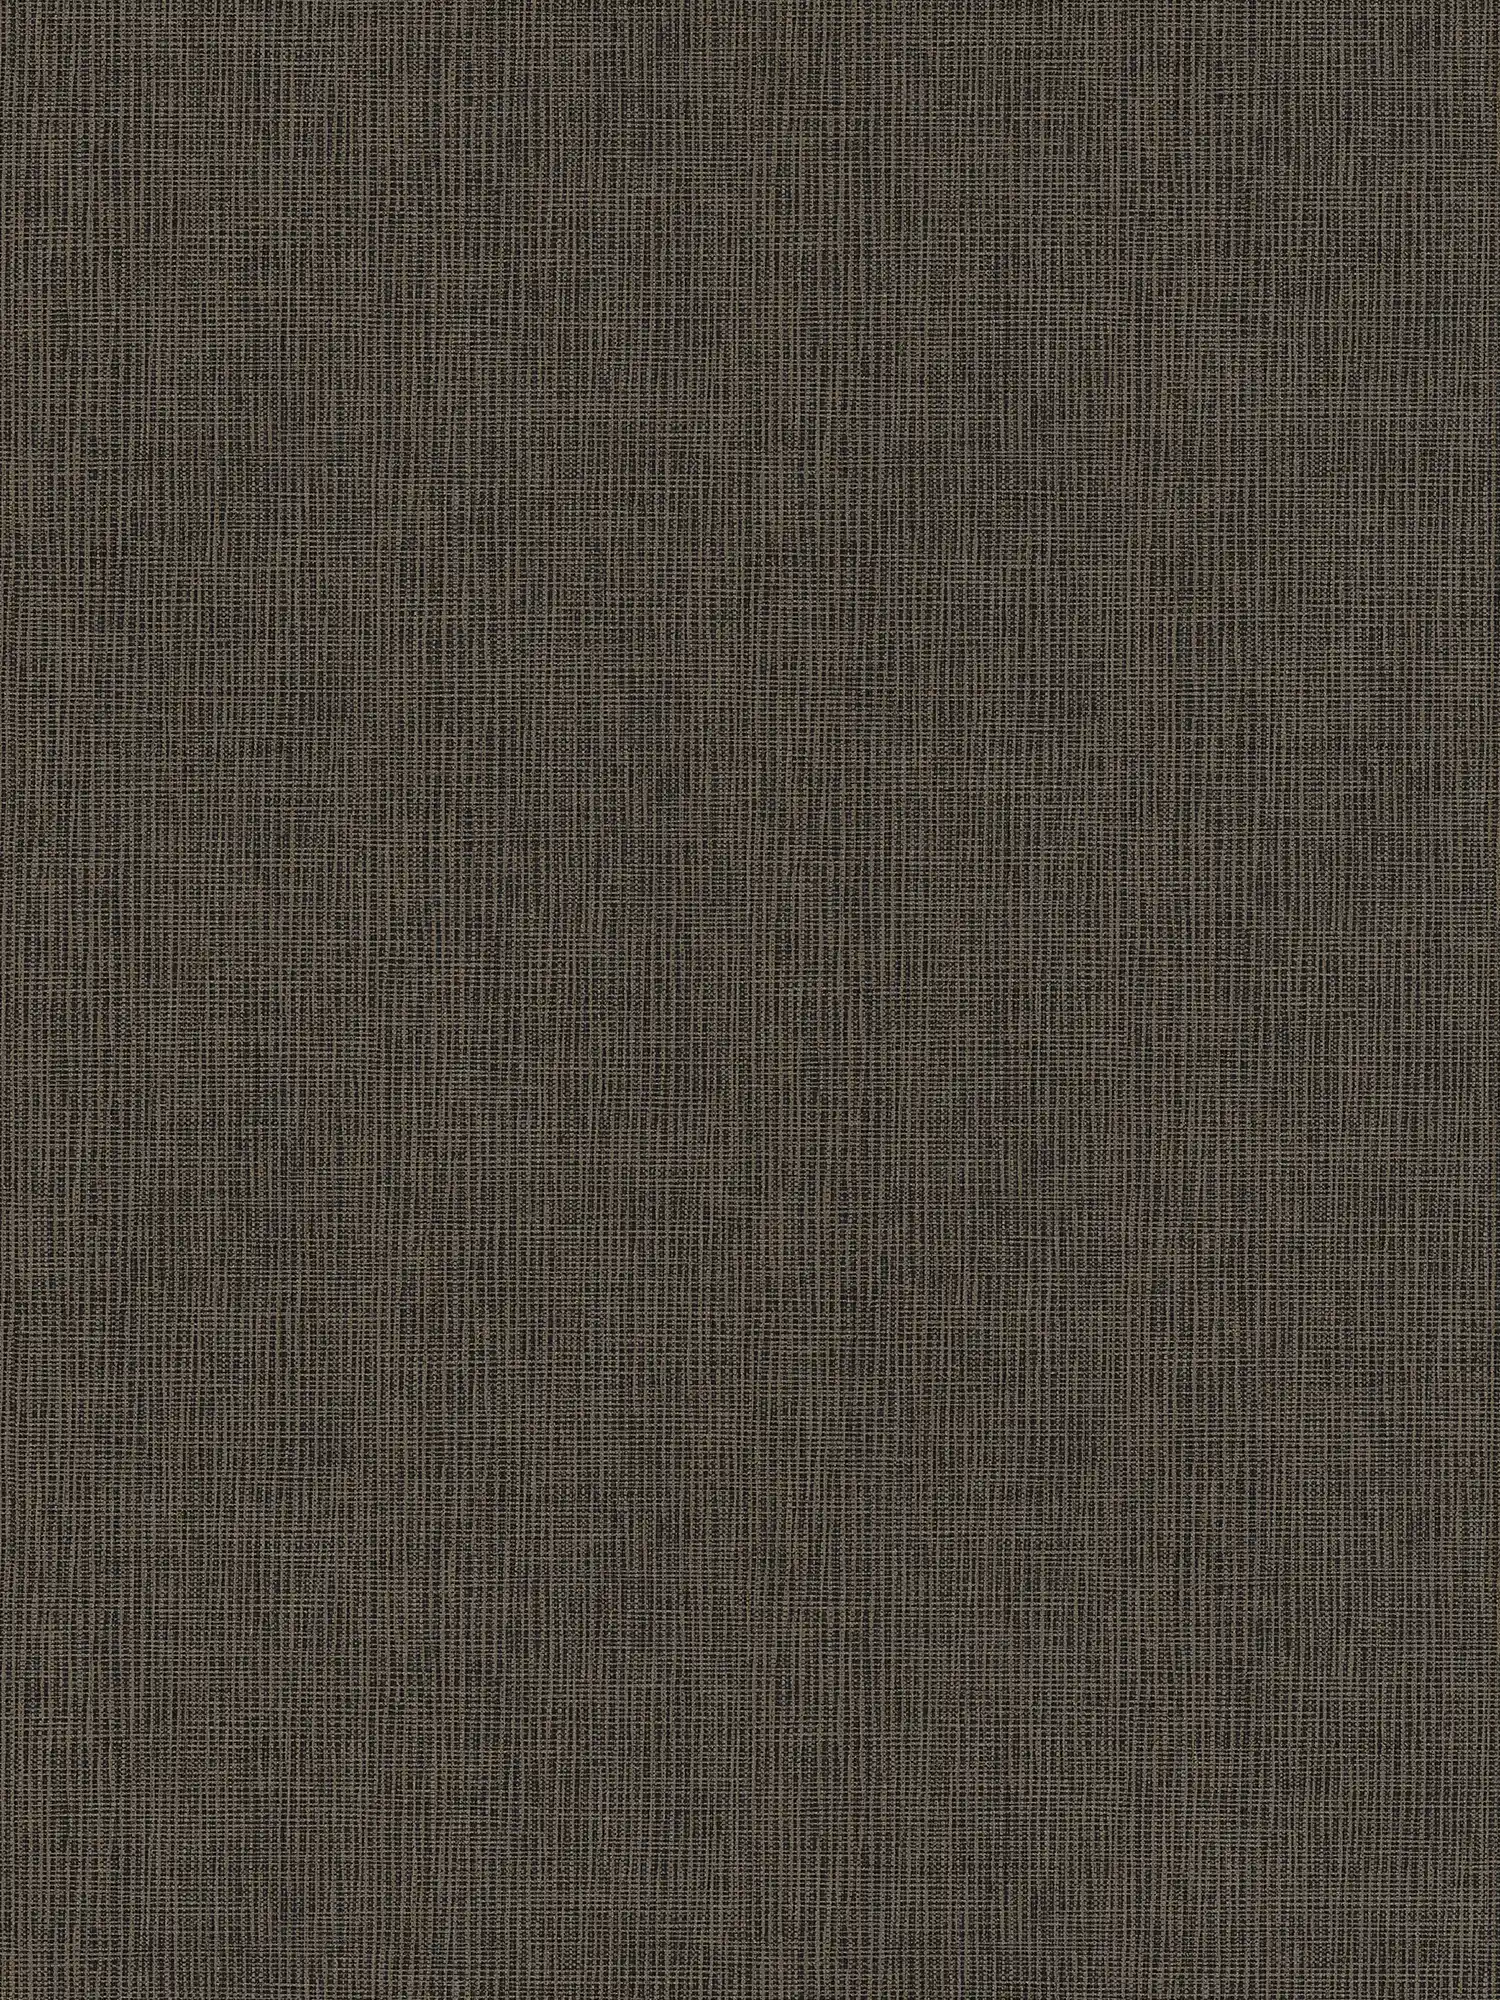 Carta da parati in tessuto non tessuto marrone con dettagli grigi e oro - blu, grigio, argento
